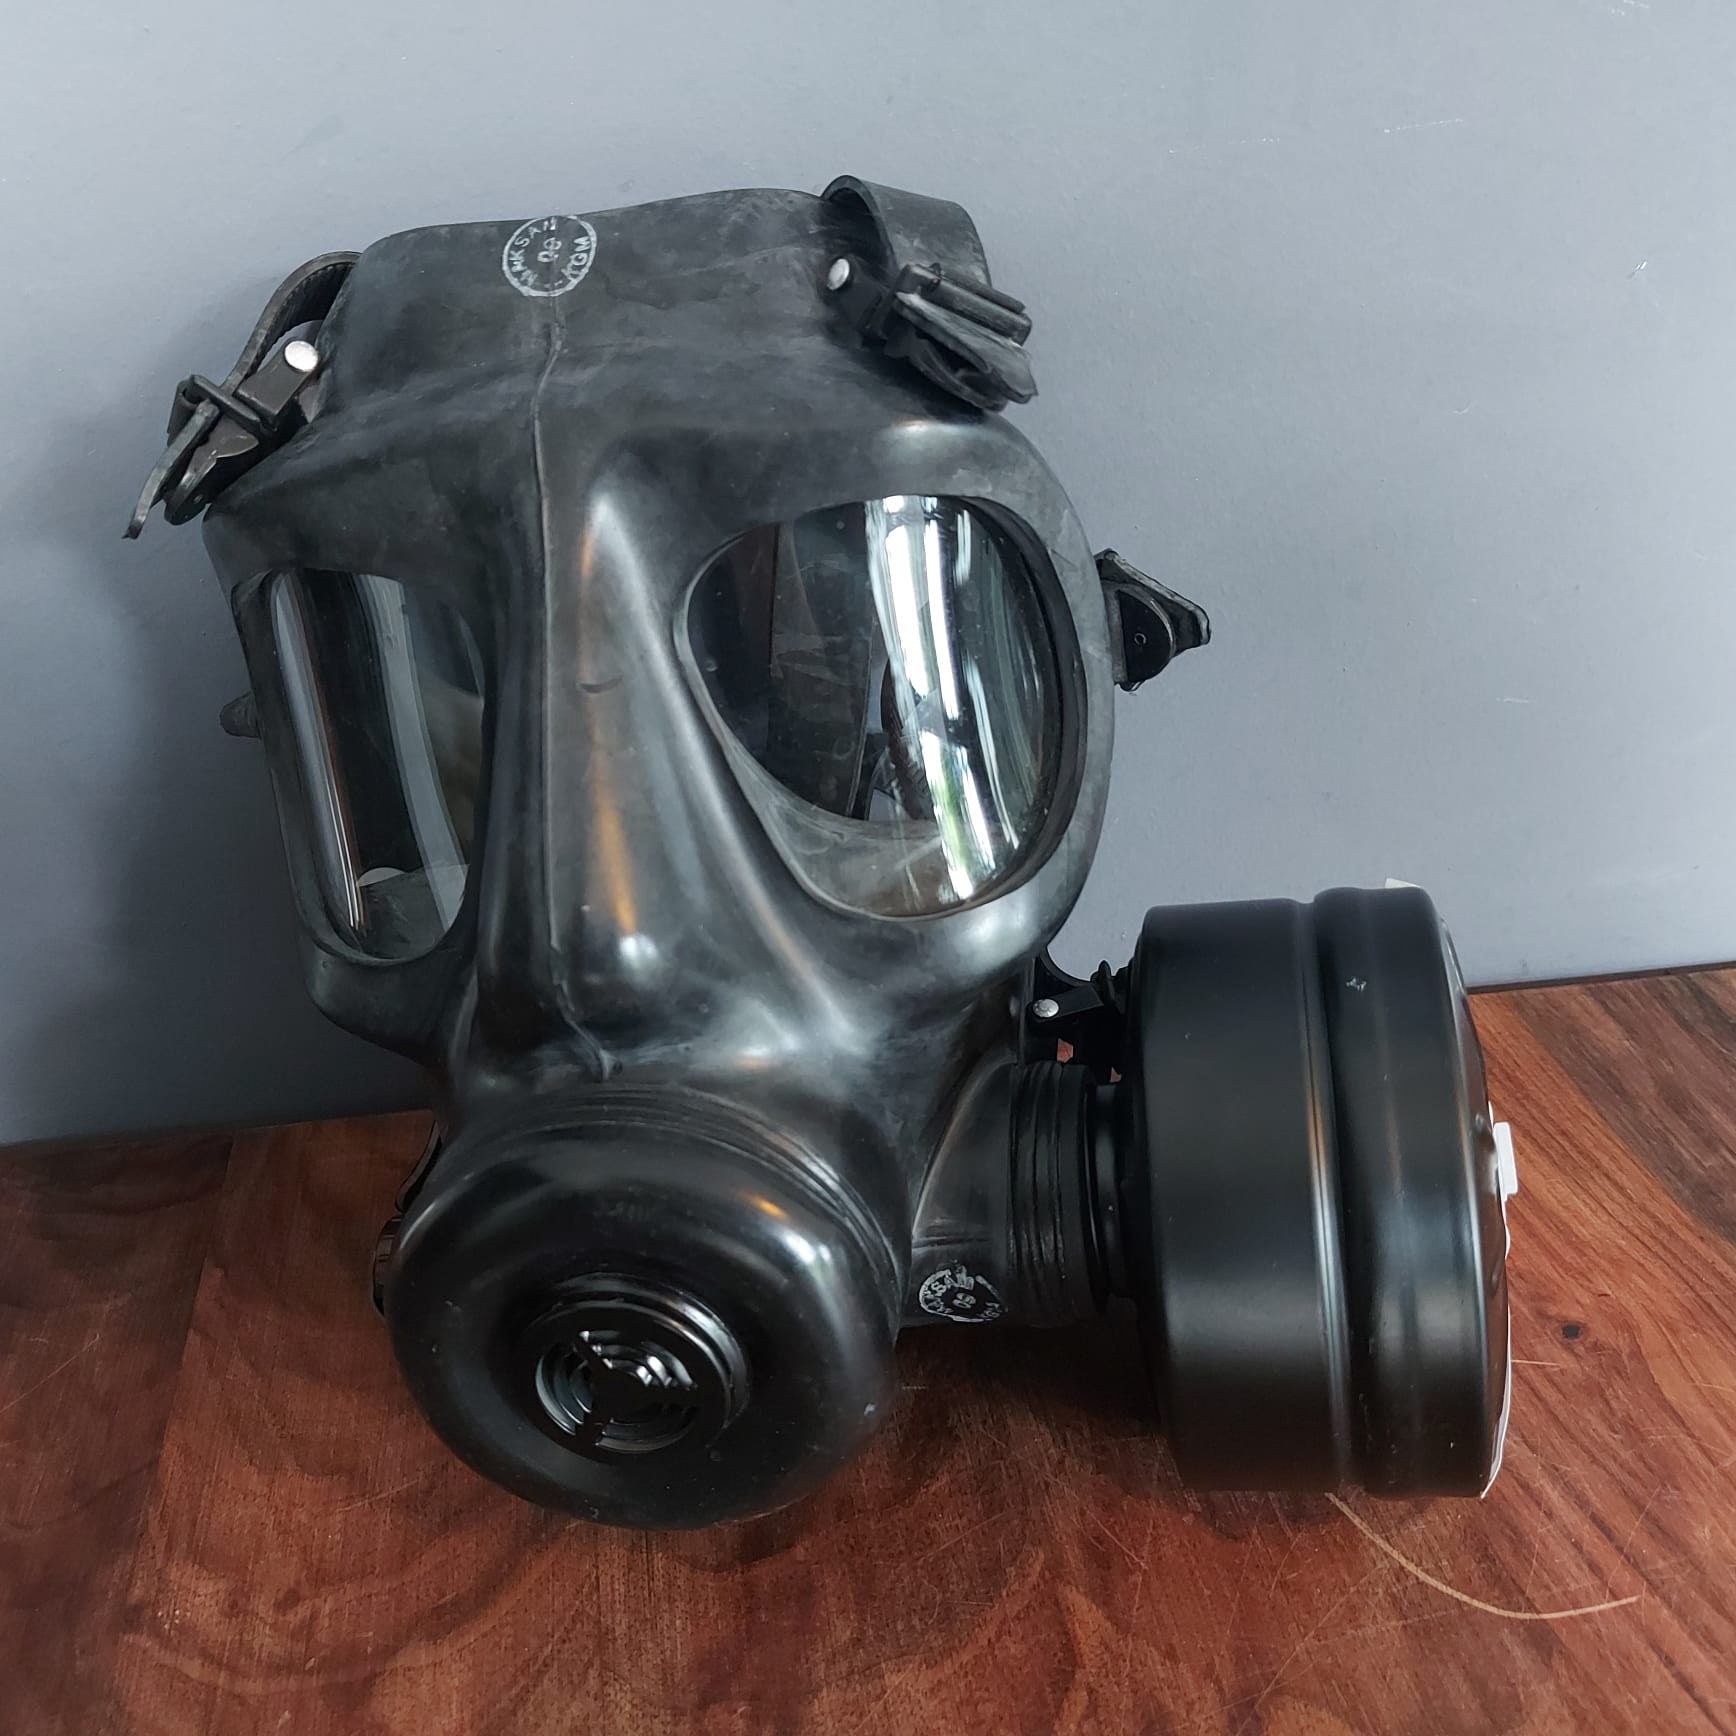 deform Mange sidde Gas Mask MKE SR10STD-12 With CBRN Filter - Etsy